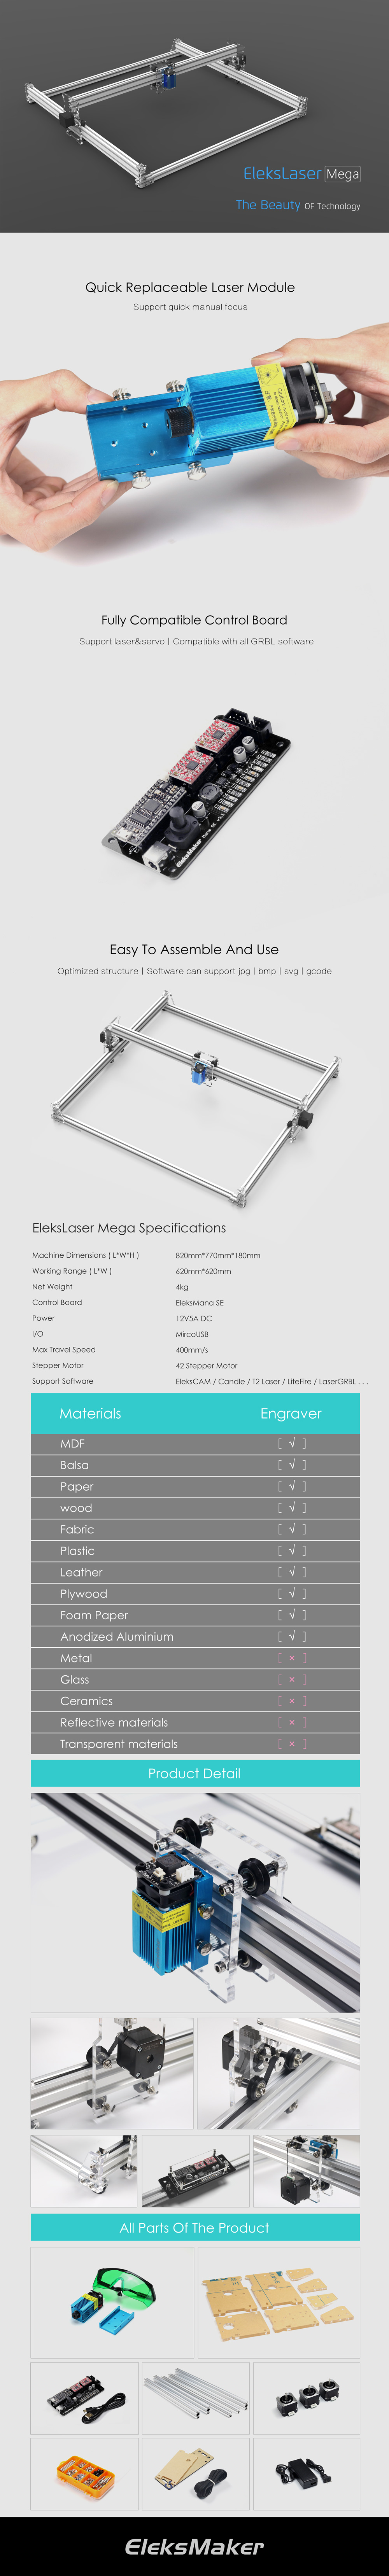 EleksMaker® EleksLaser-Mega 500mW/1600mW/2500mW Laser Engraving Machine CNC Laser Printer 23